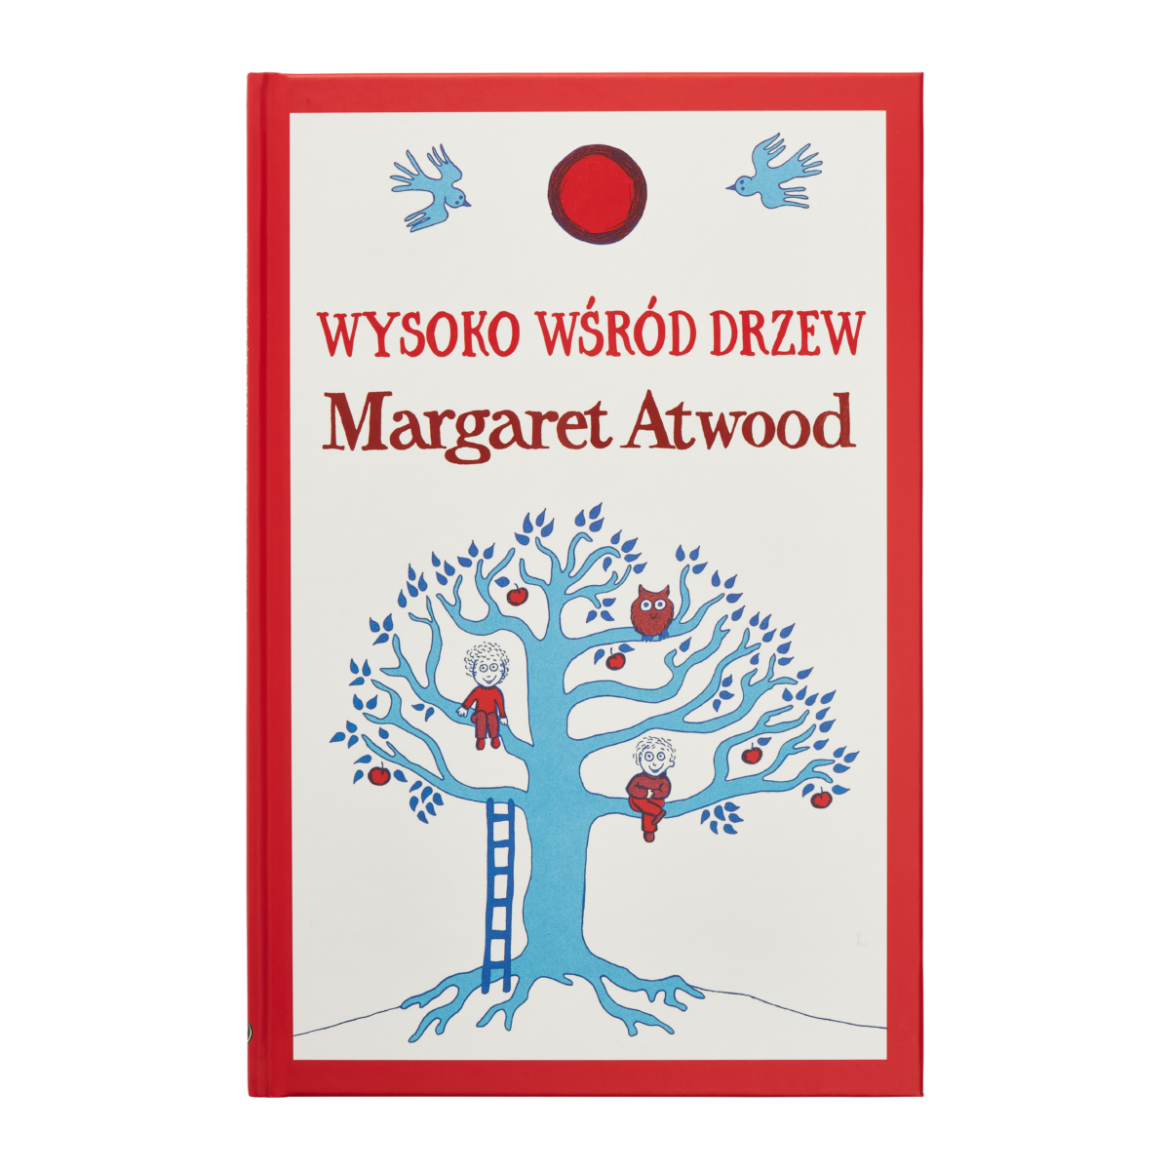 Wysoko-wśród-drzew-Margaret-Atwood.png